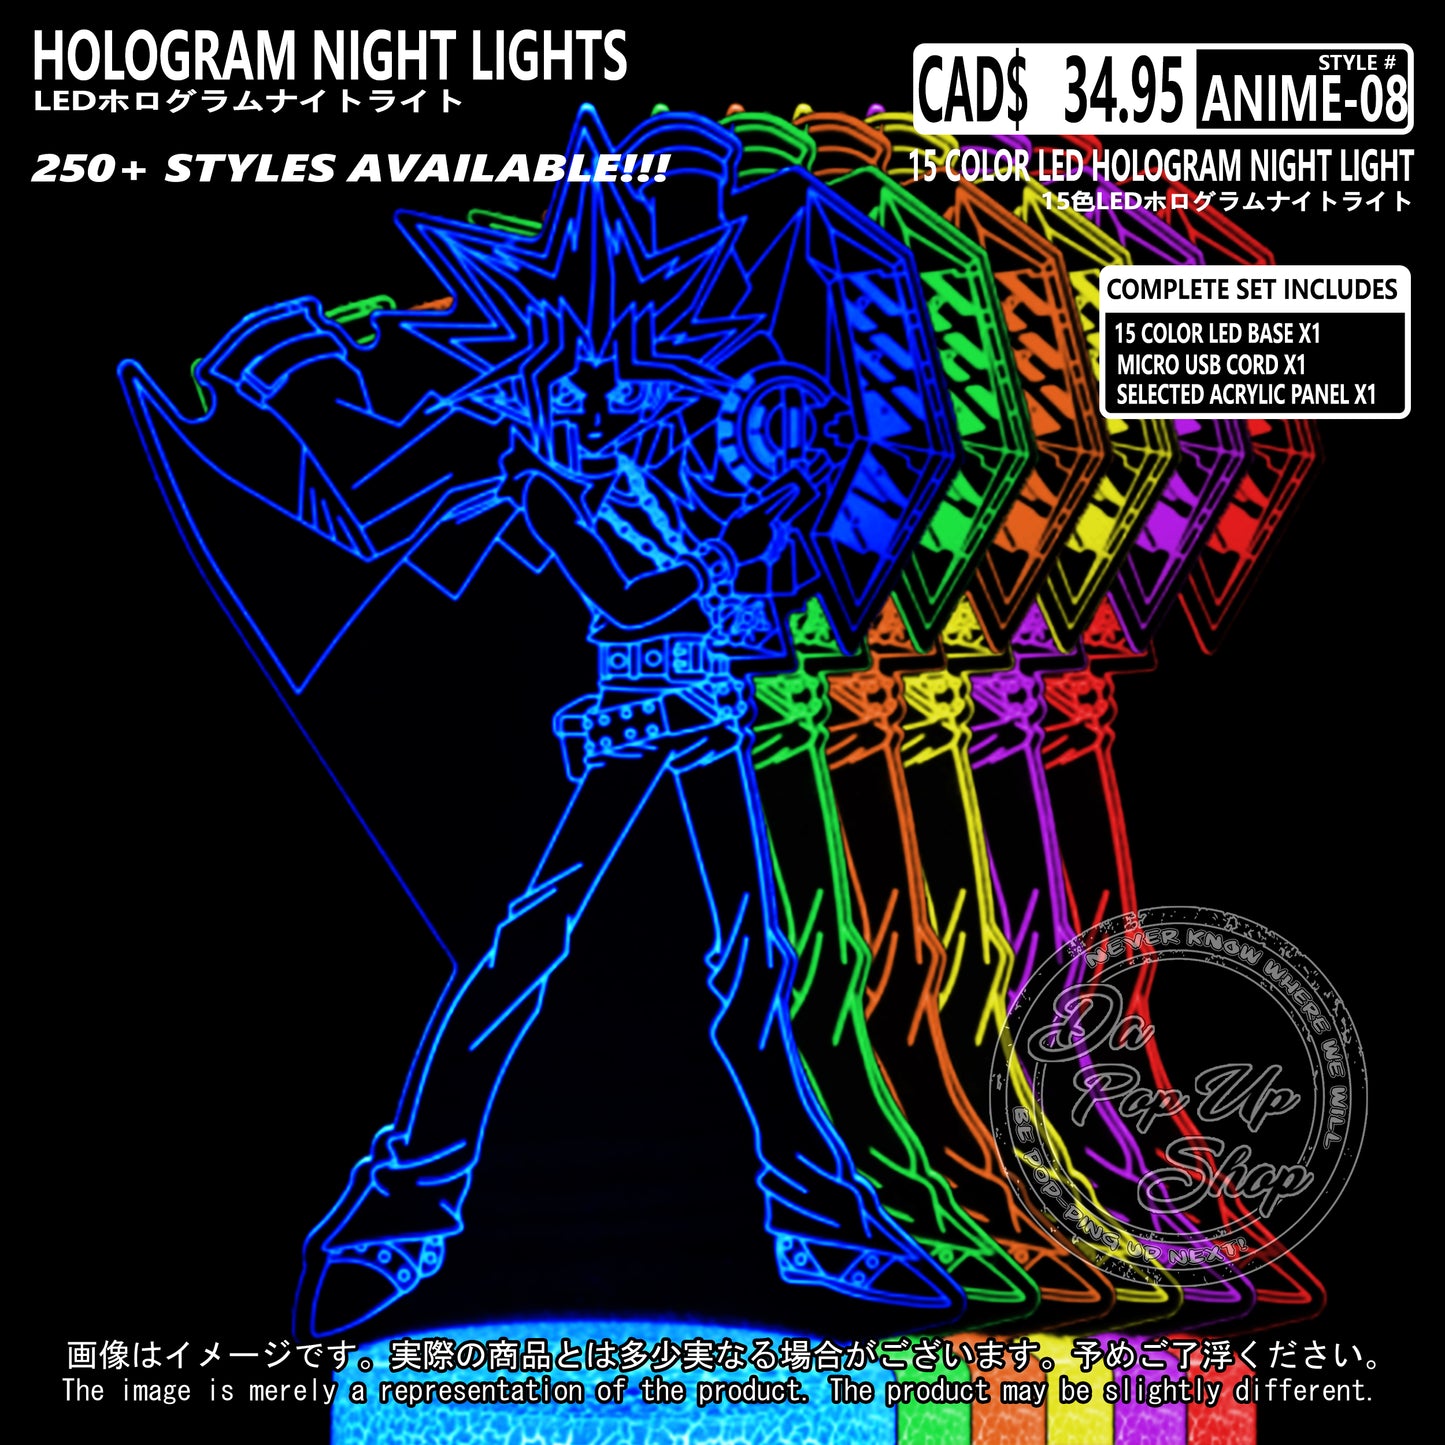 (ANIME-08) Yu-Gi-Oh Hologram LED Night Light